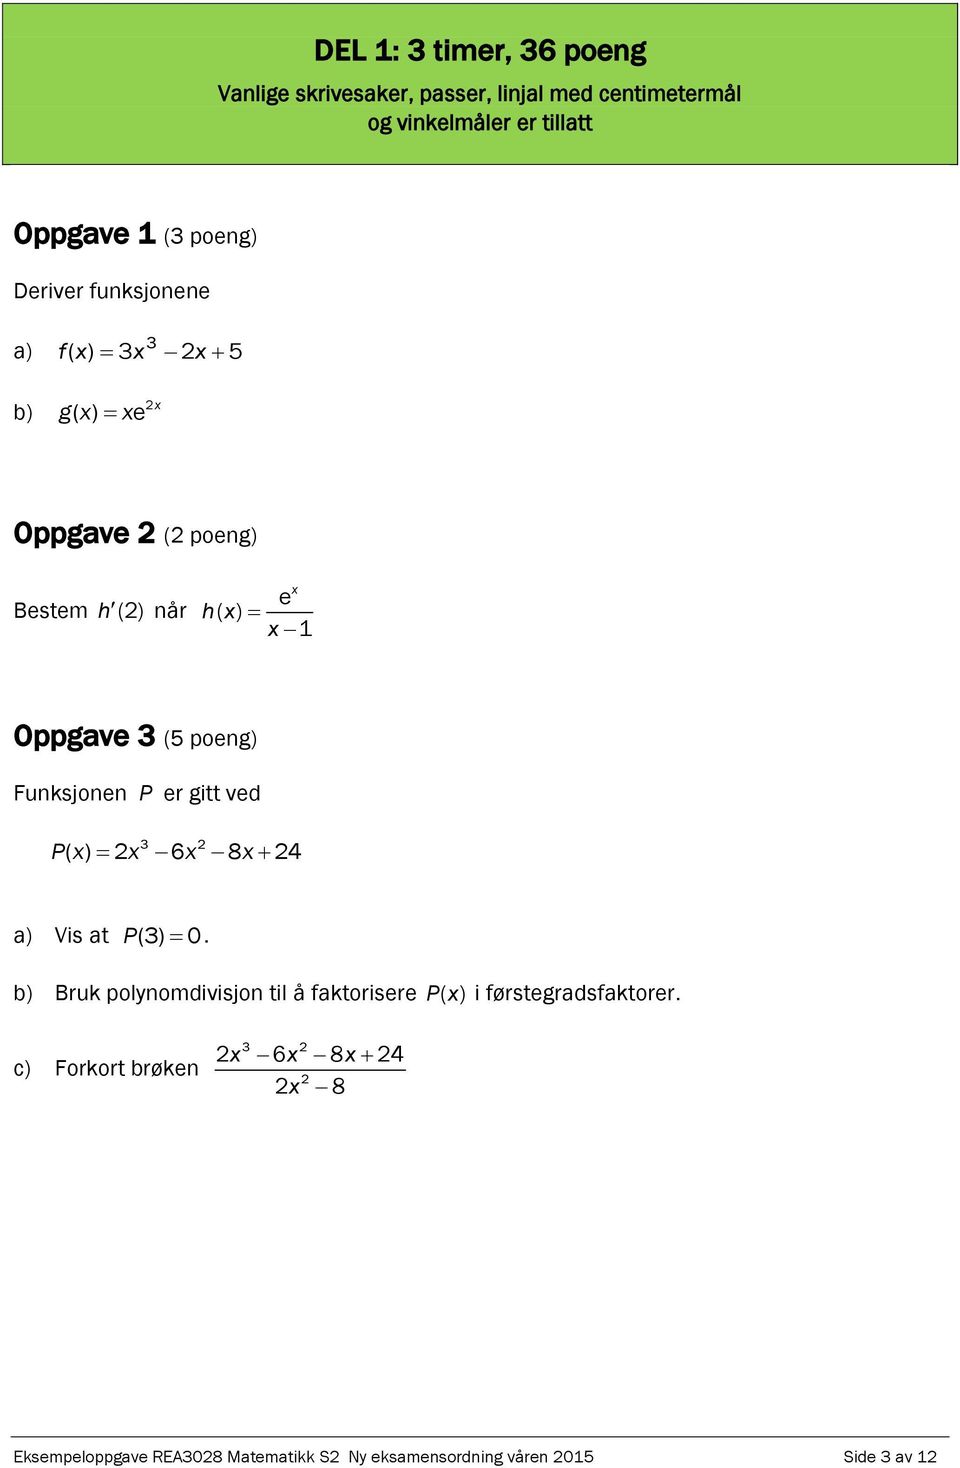 Eksempeloppgave REA3028 Matematikk S2 Eksempel på eksamen våren 2015 etter  ny ordning. Ny eksamensordning. Del 1: 3 timer (uten hjelpemidler) - PDF  Gratis nedlasting